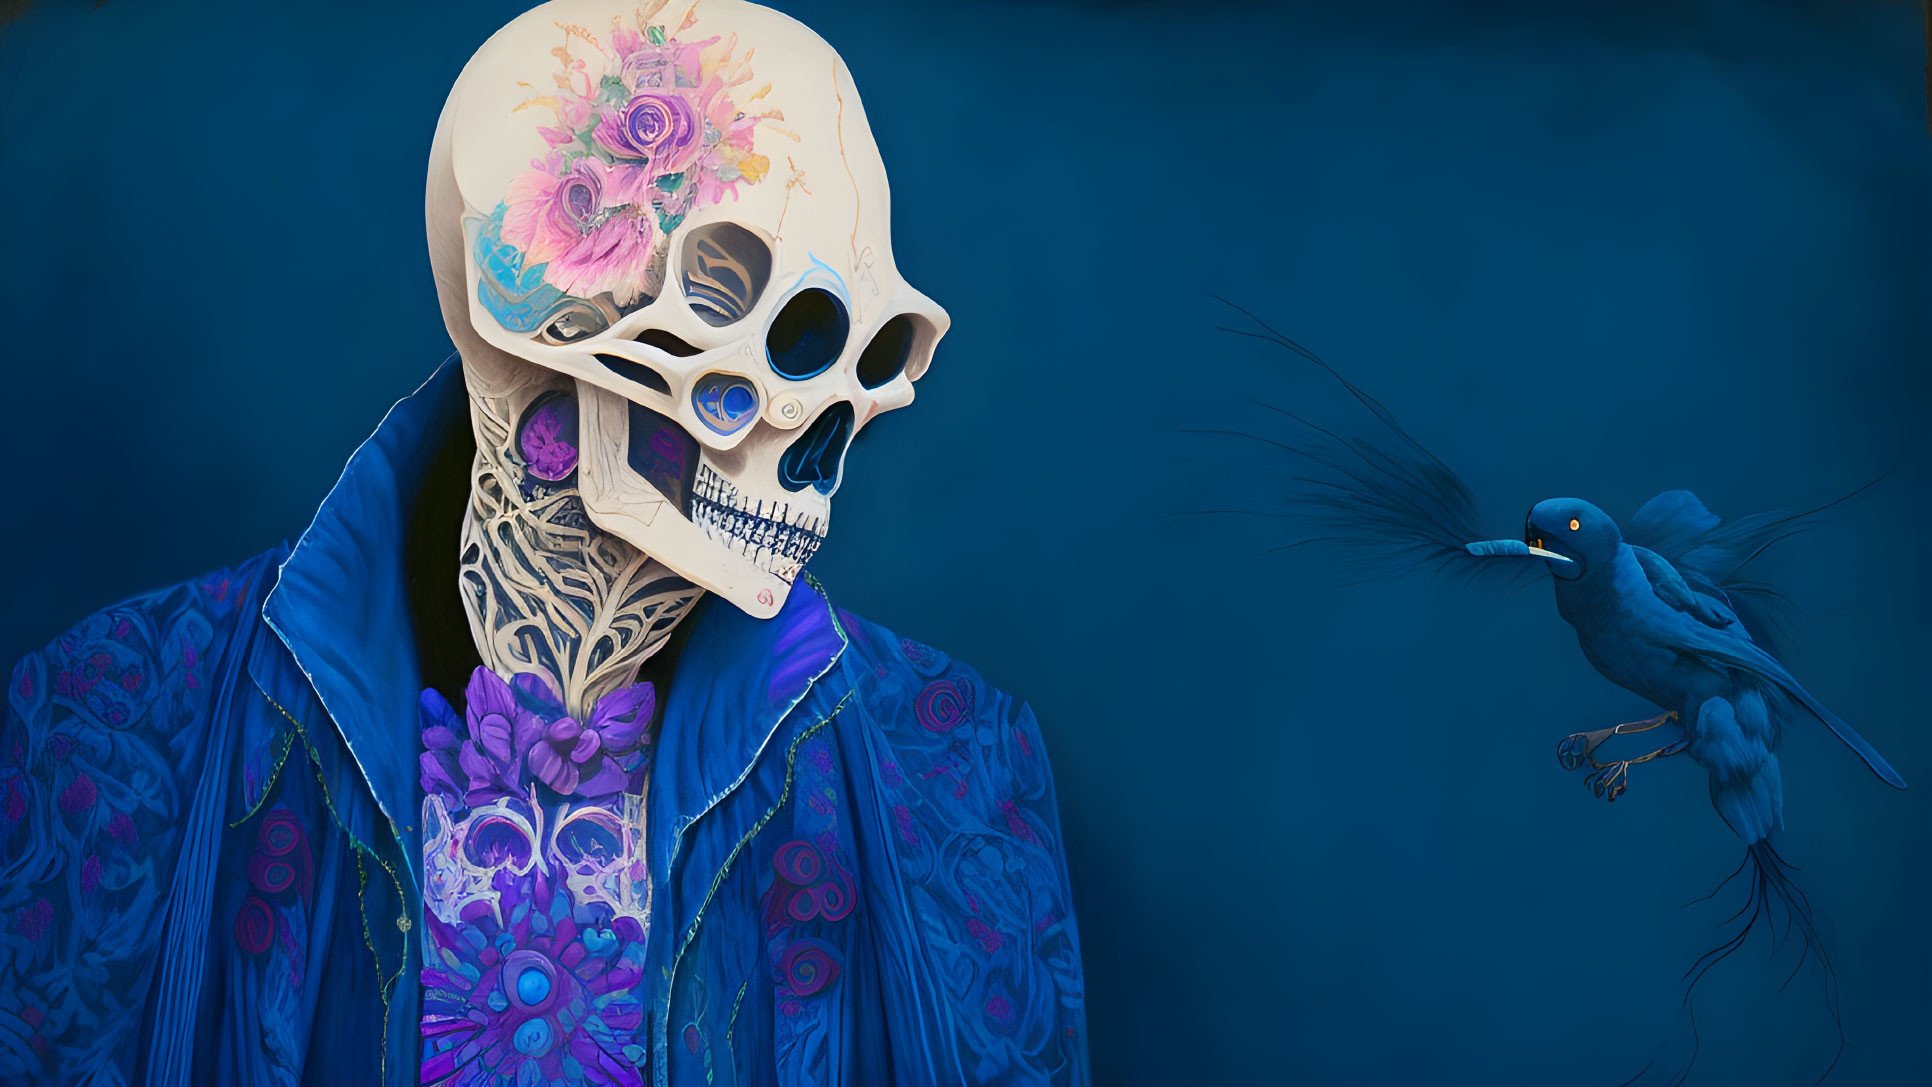 Skeletal figure with floral skull and blue jacket on dark background